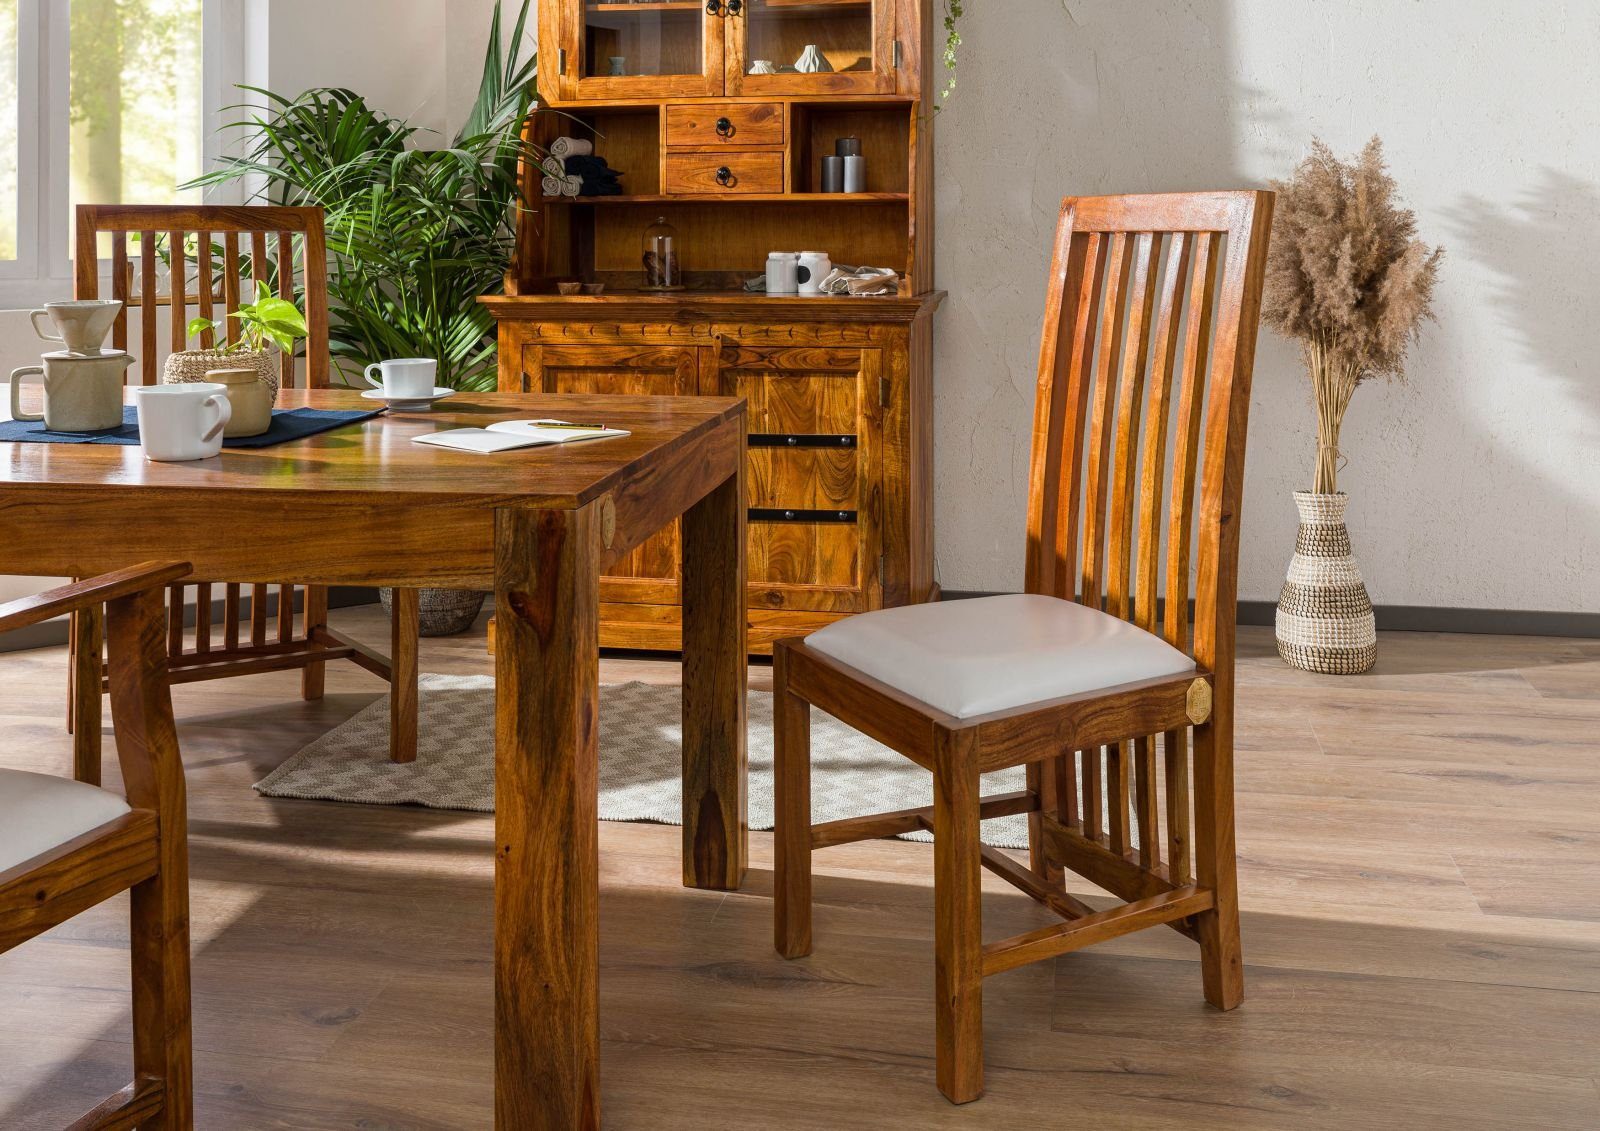 Massivmoebel24 Holzstuhl OXFORD (Extravaganter Stuhl, mit luftiger  Rückenlehne die bis zum Boden reicht, inklusive Polsterung, braun lackiert  43x50x109 Akazie montiert), hochwertiges Edelholz, authentische Holzadern,  aufwendige Schnitzereien und ...